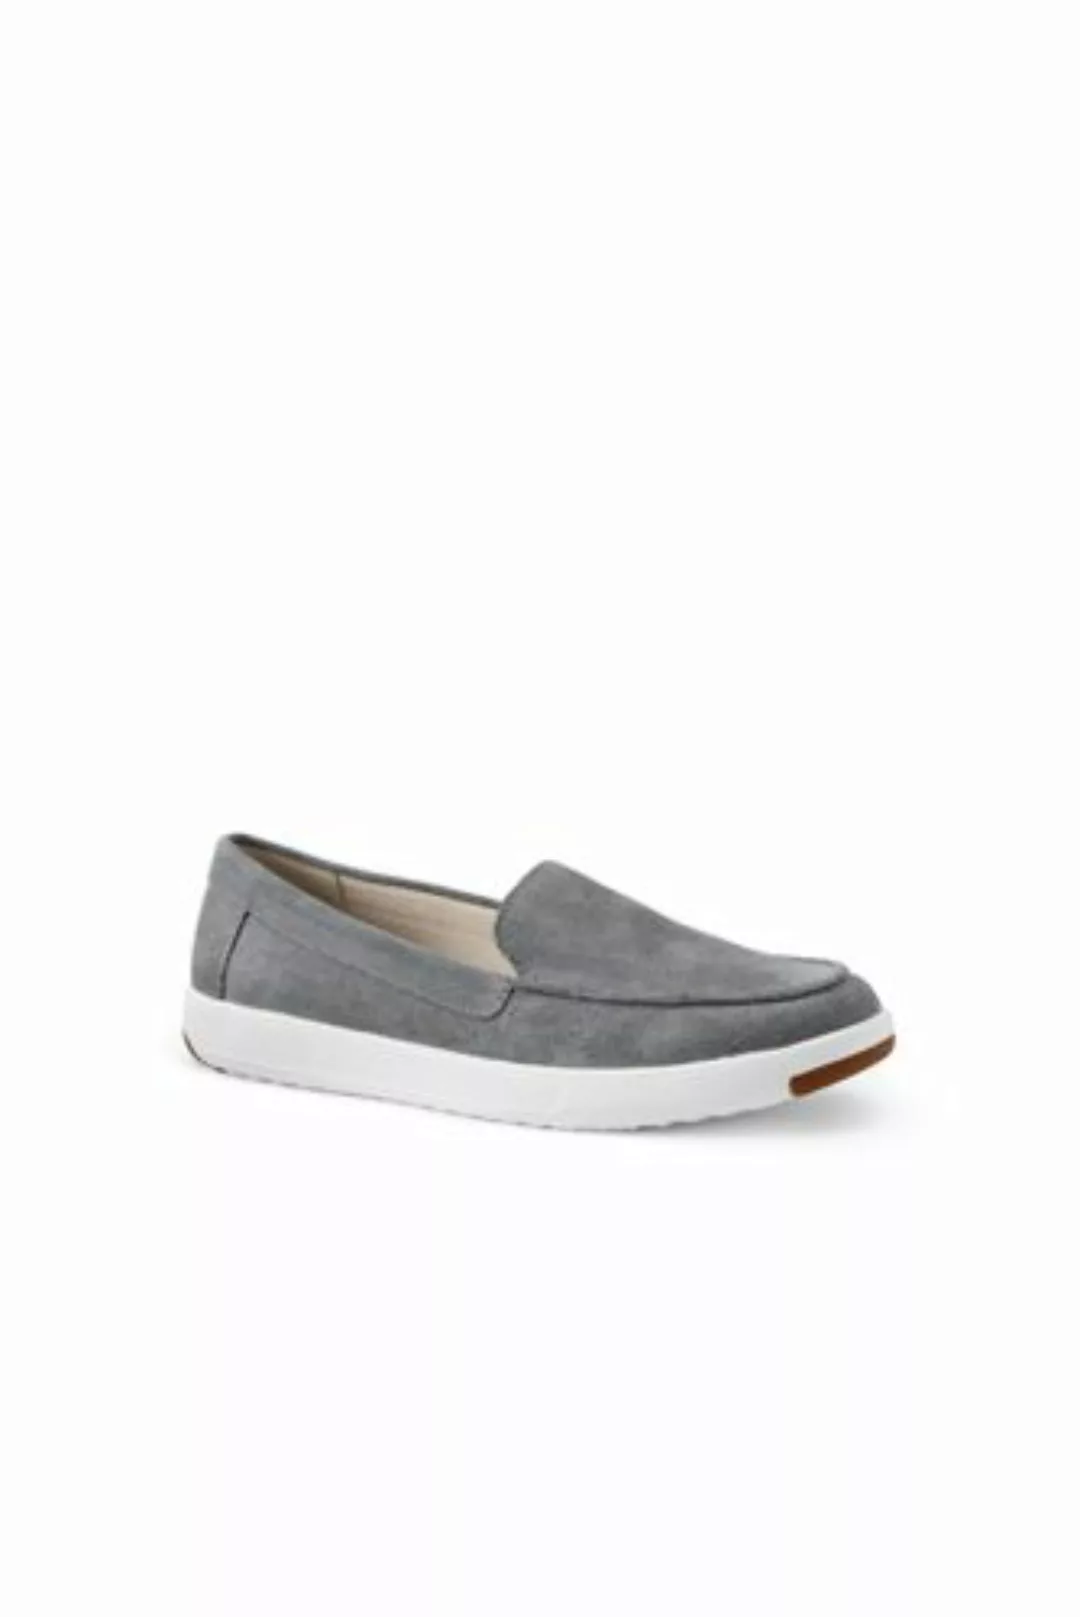 Federleichte Komfort-Loafer, Damen, Größe: 41.5 Normal, Grau, Rauleder, by günstig online kaufen